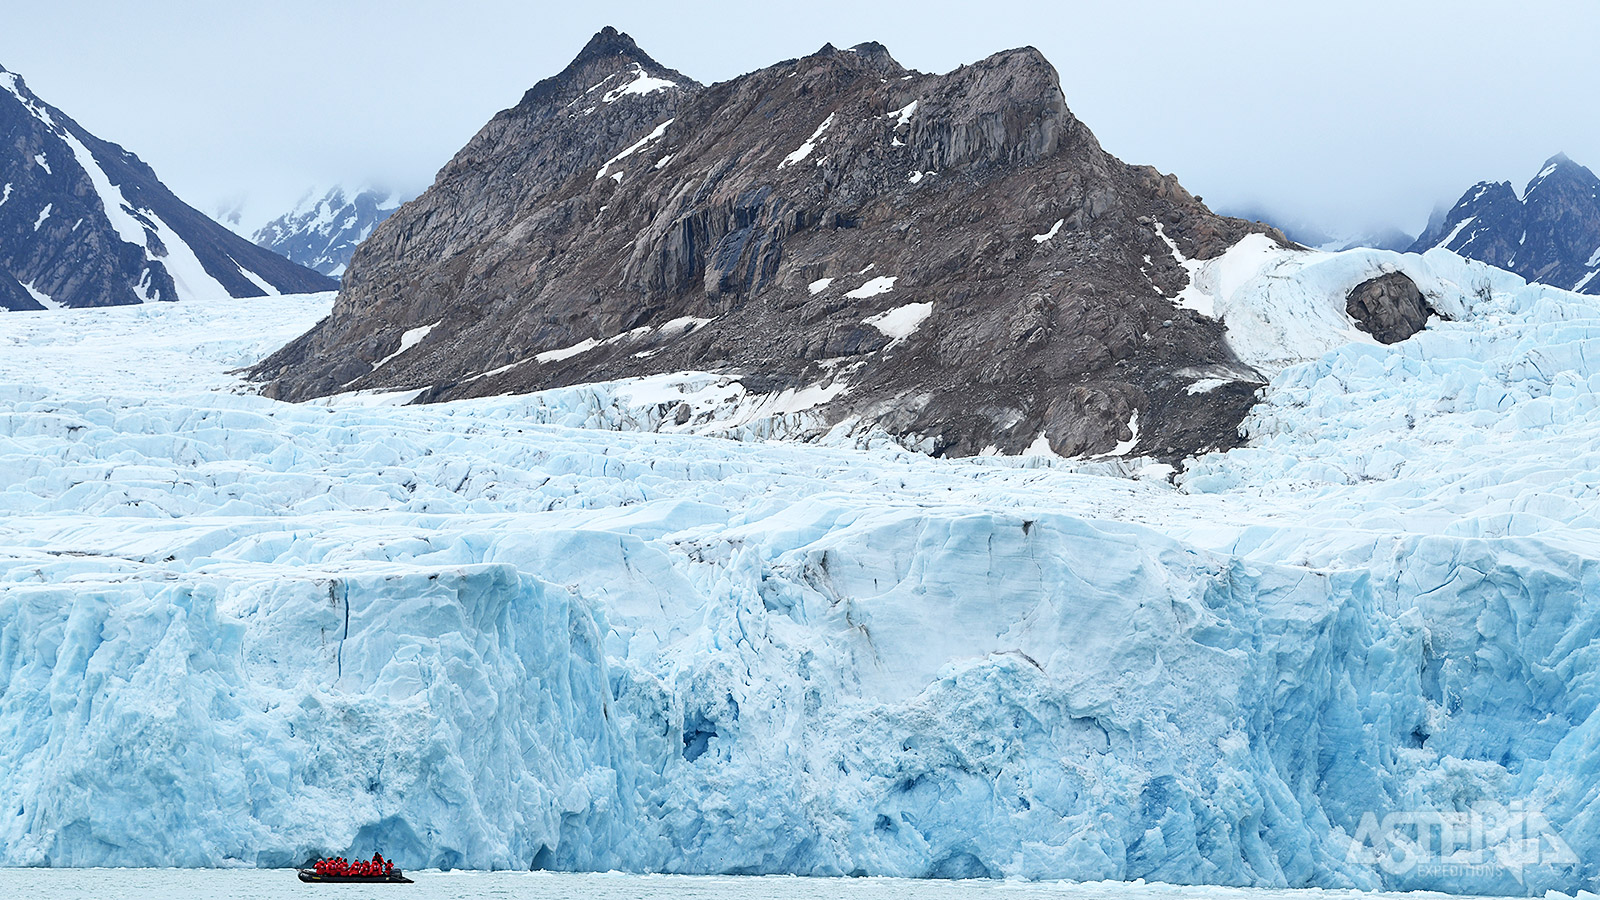 Vaar in een zodiac door prachtige fjorden, langs enorme gletsjers en grillige ijsbergen